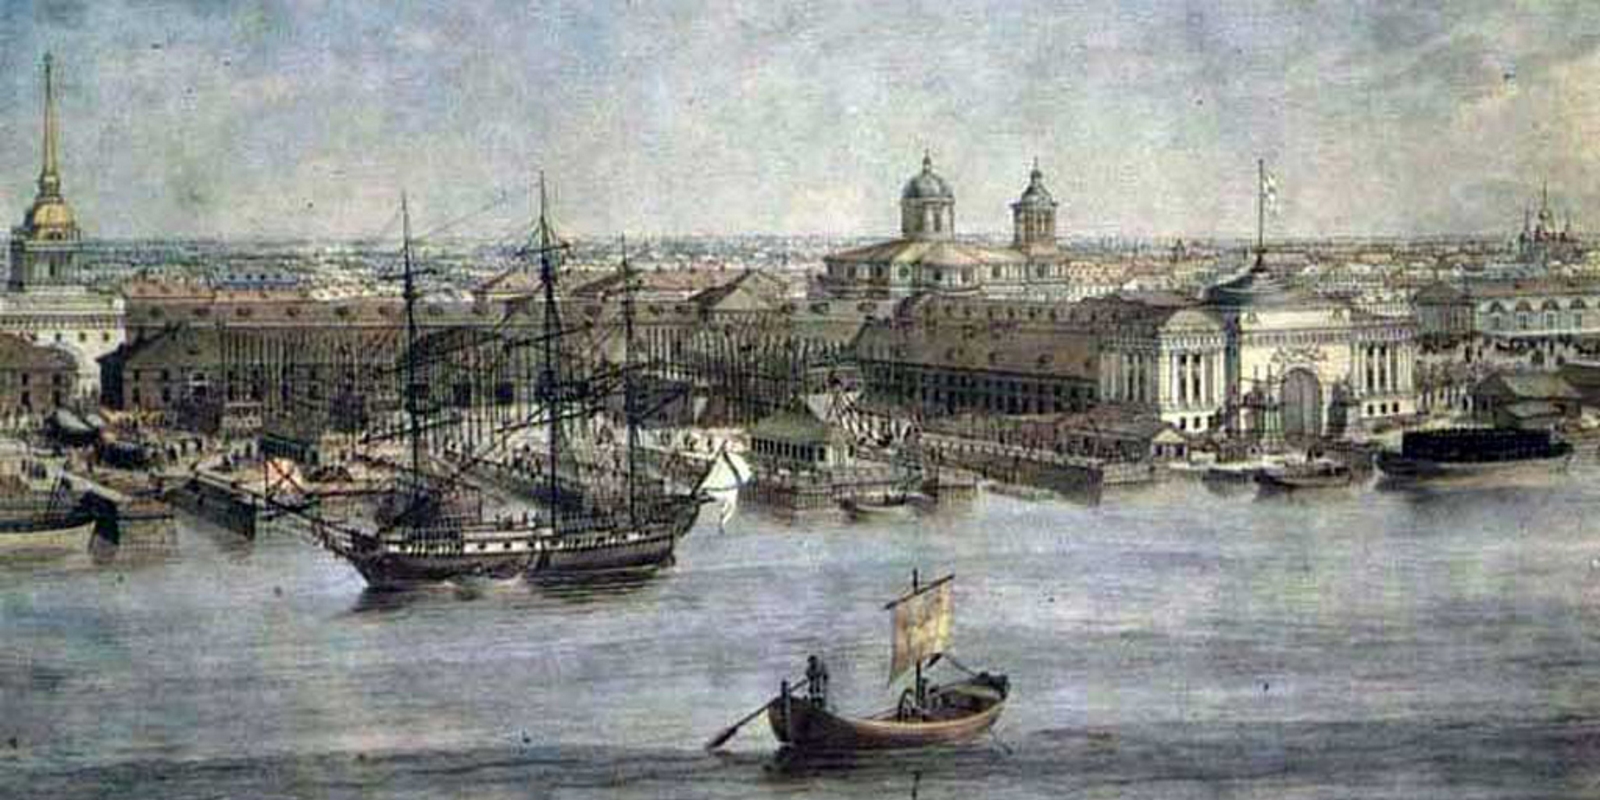 Адмиралтейская верфь в Санкт-Петербурге в 18 веке